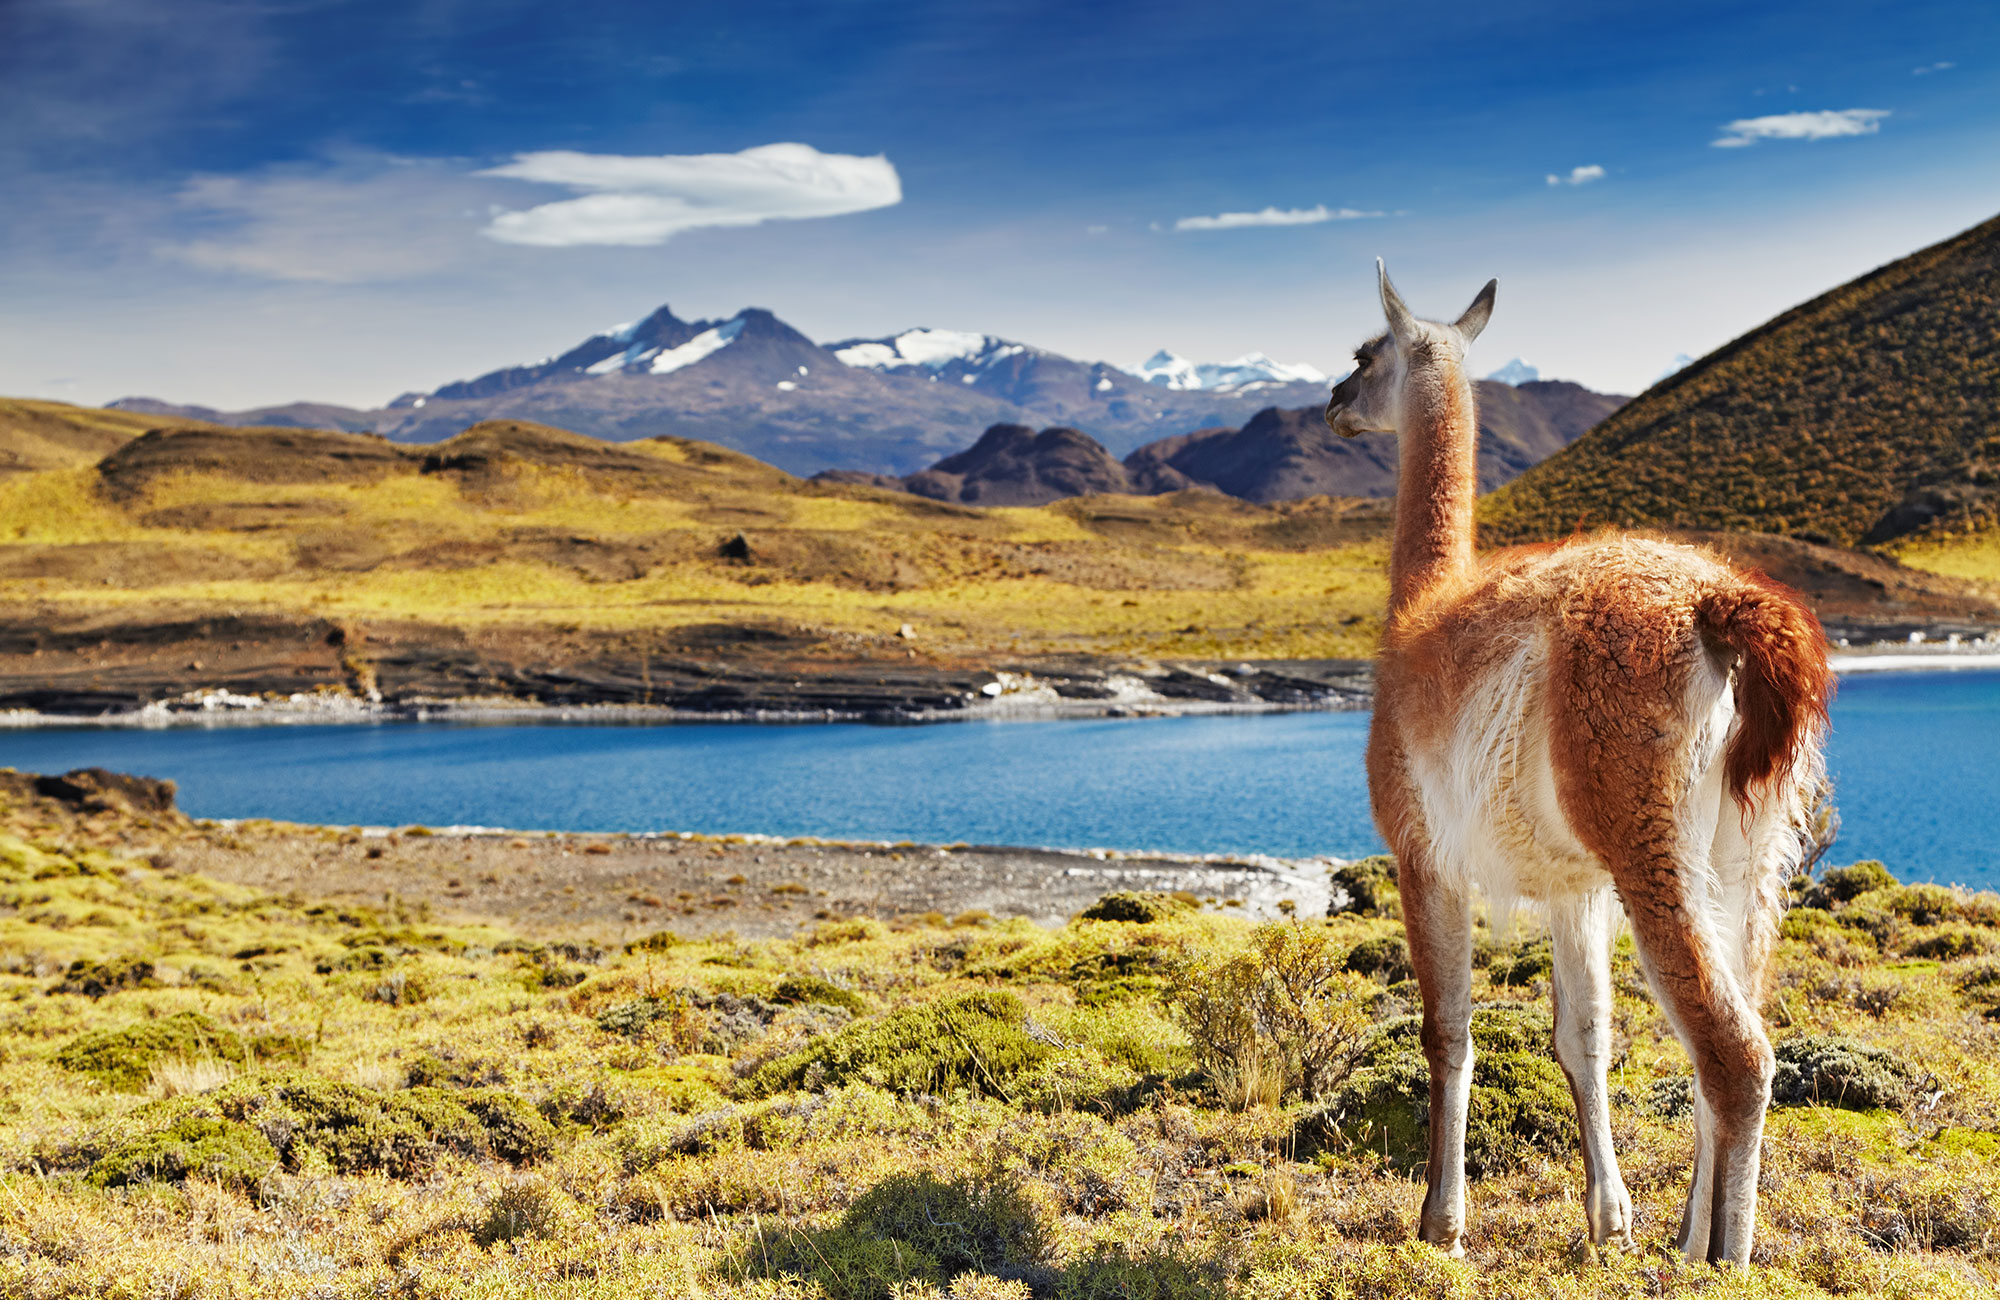 Parhaat matkakohteet Etelä-Amerikassa - Chile, Patagonia - KILROY